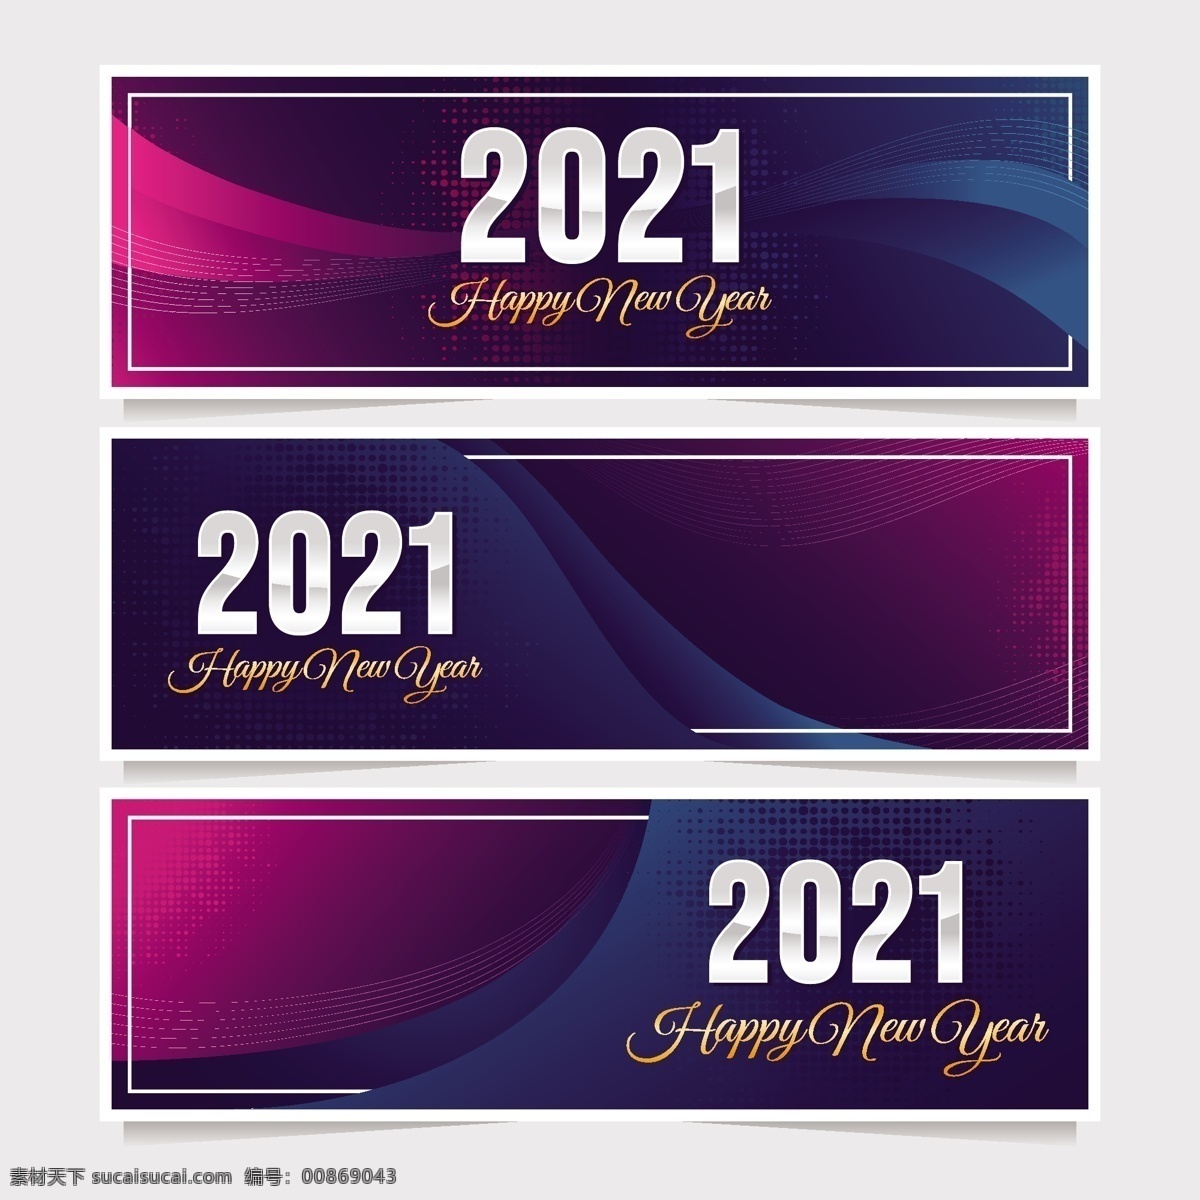 新年标签图片 新年标签 新年标志 新年促销 新年背景 新年 海报 中国年 新年快乐 中国元素 节日 元旦 新春快乐 2021